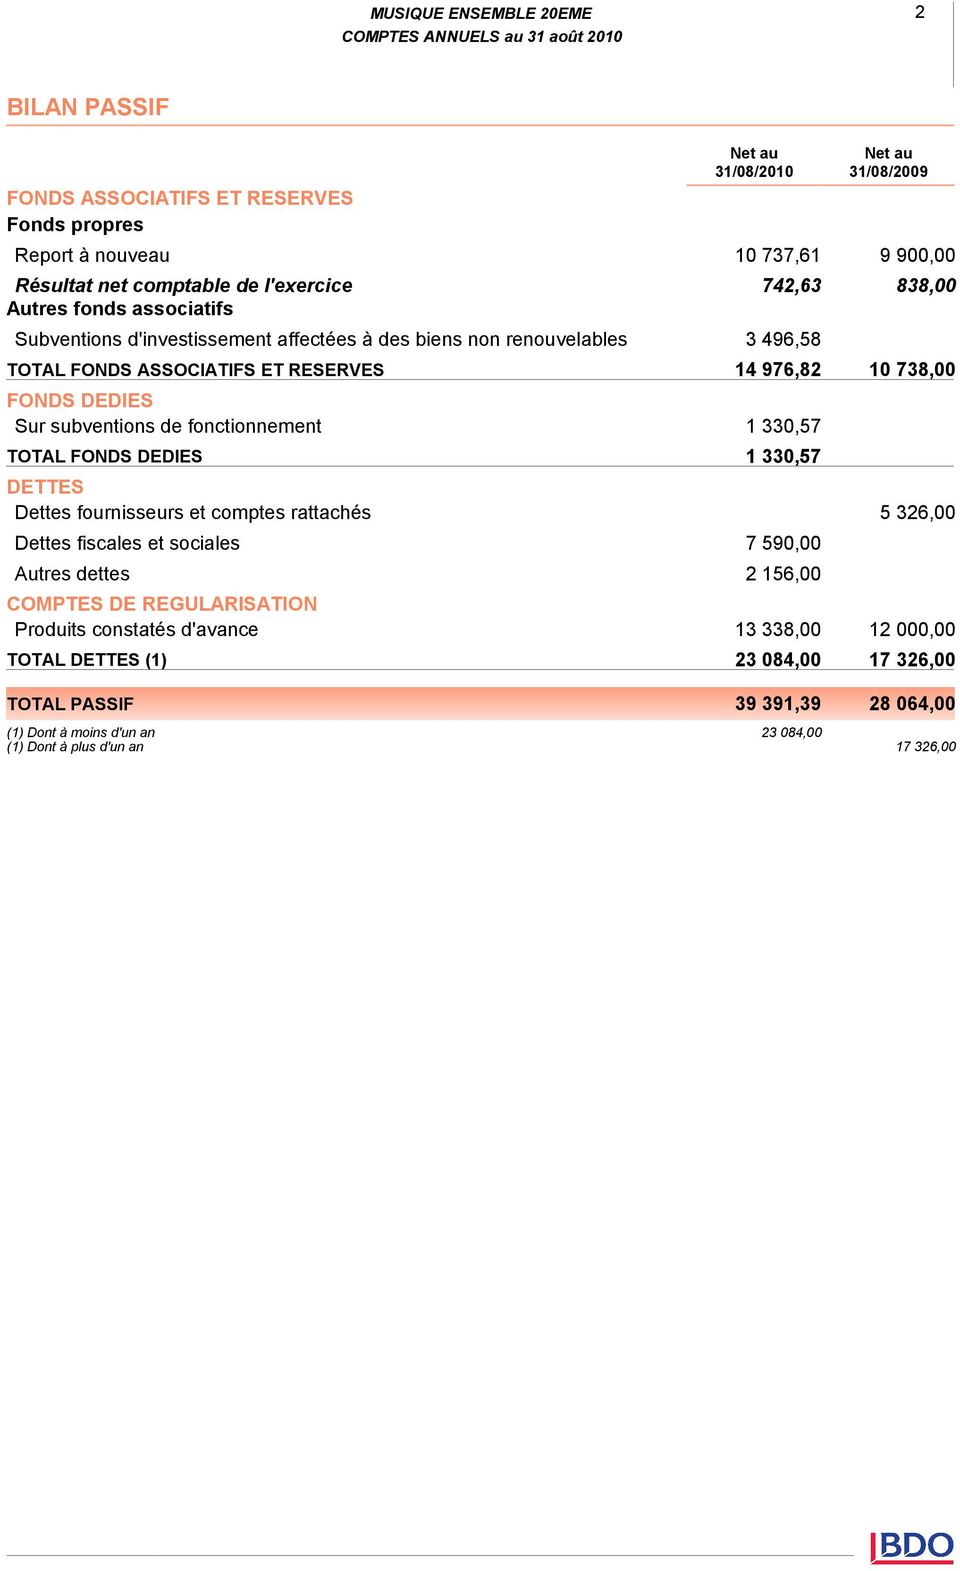 sociales Autres dettes COMPTES DE REGULARISATION Produits constatés d'avance TOTAL DETTES (1) Net au 31/08/2010 Net au 31/08/2009 10 737,61 9 900,00 742,63 838,00 3 496,58 14 976,82 10